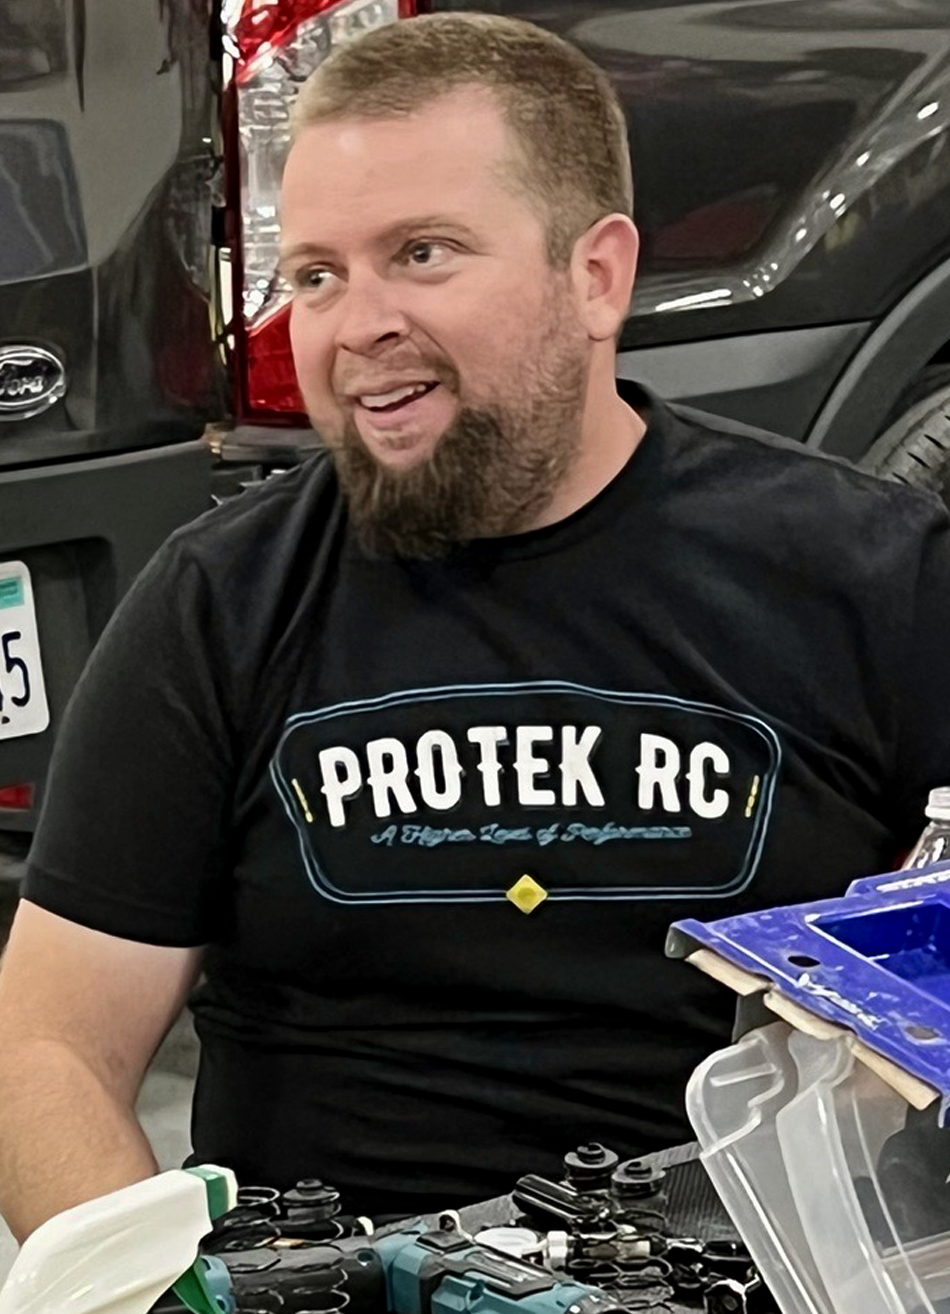 Meet Ryan Maifield - ProTek RC Pro Team Member